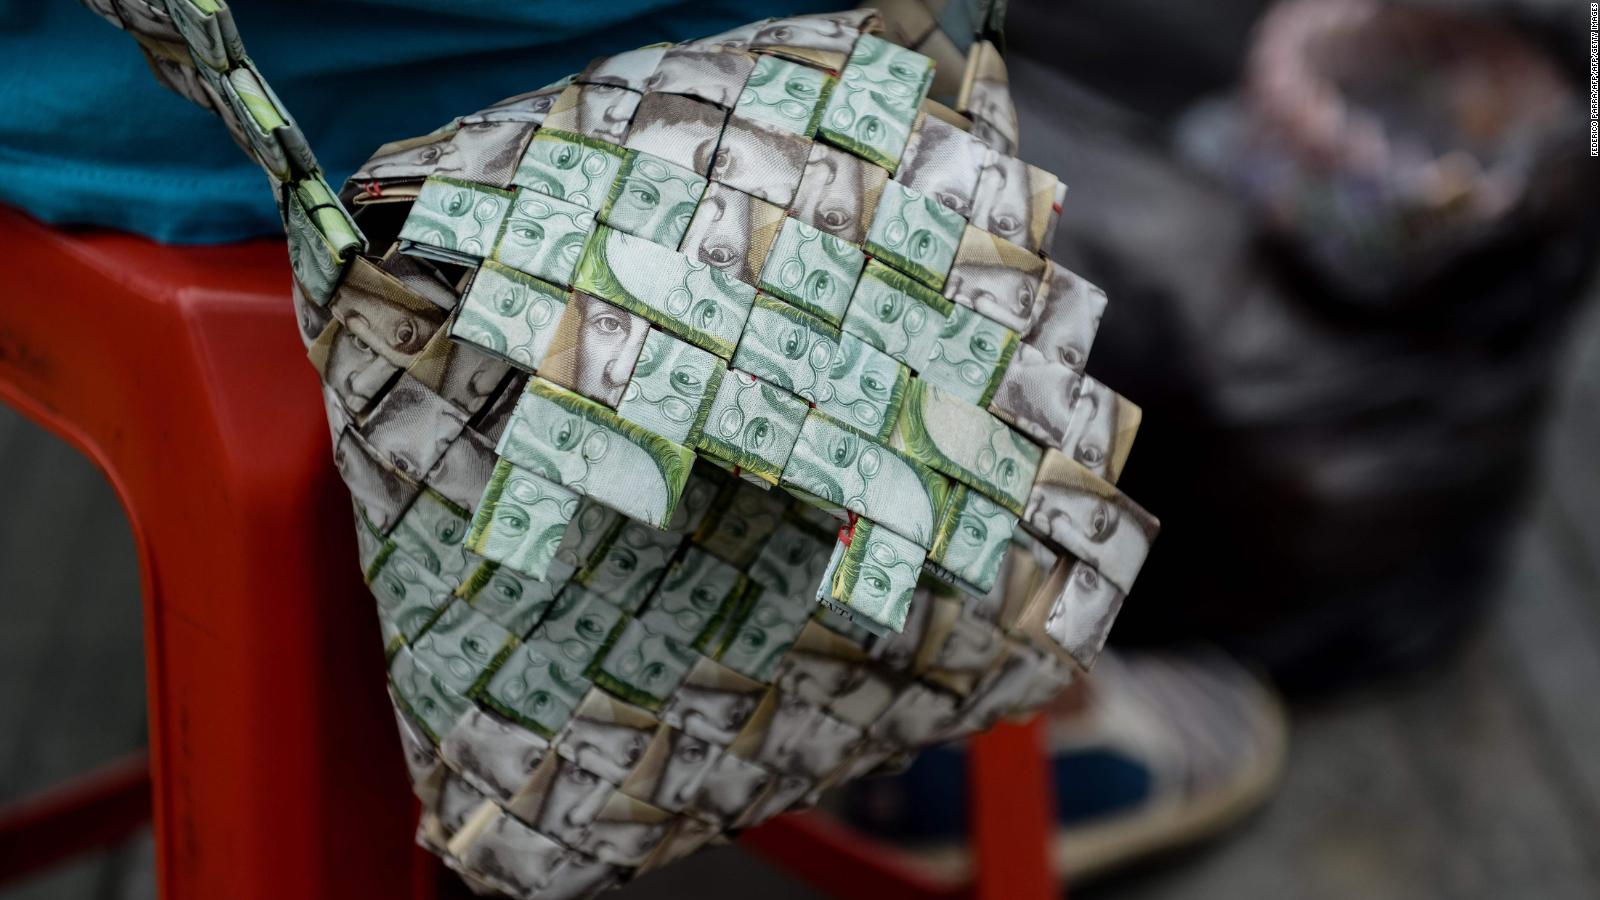 doce Remontarse Cría En Venezuela los artesanos hacen carteras con billetes: este es el “Money  Art” | Video | CNN